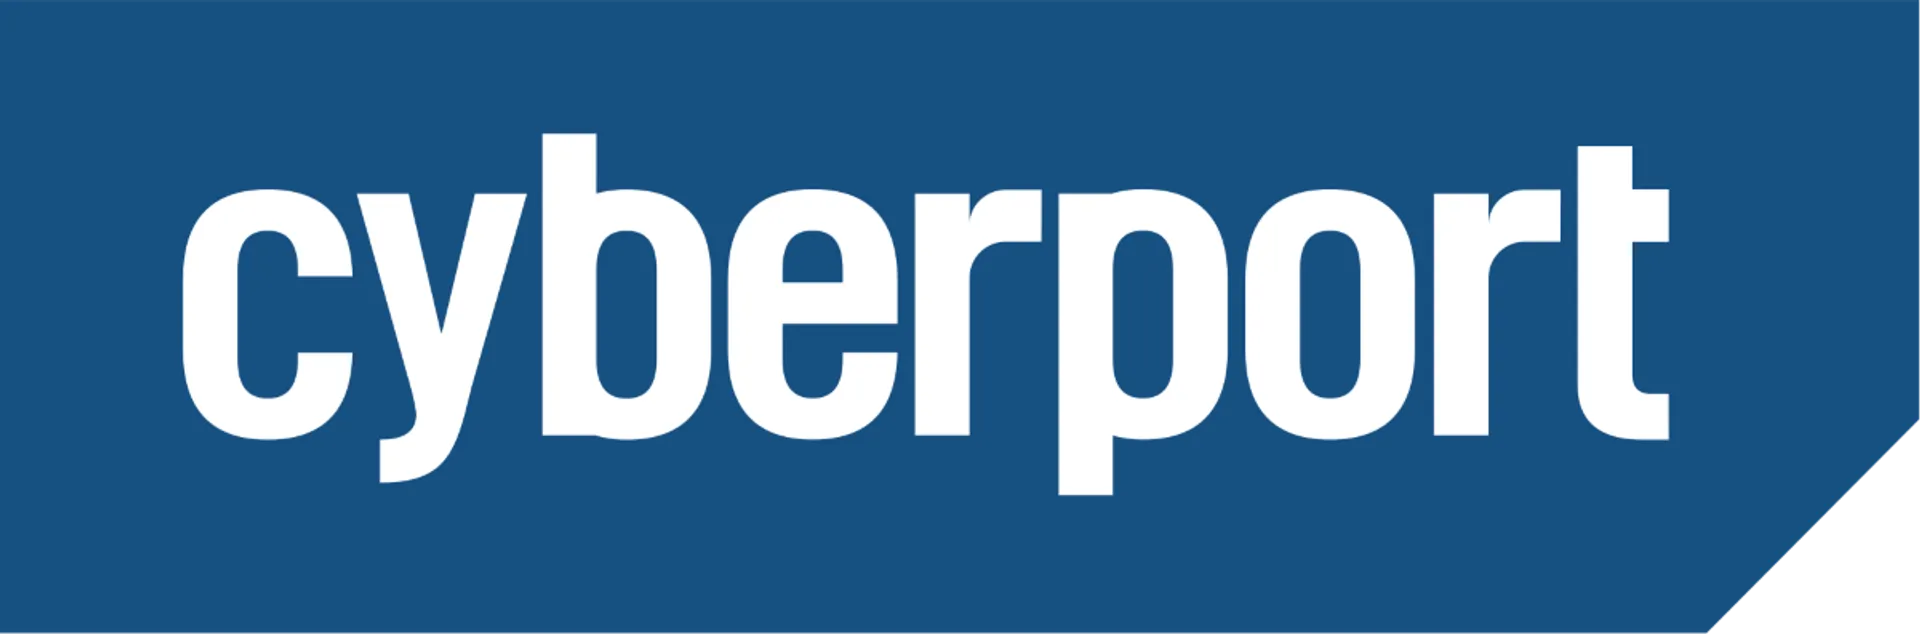 CYBERPORT logo